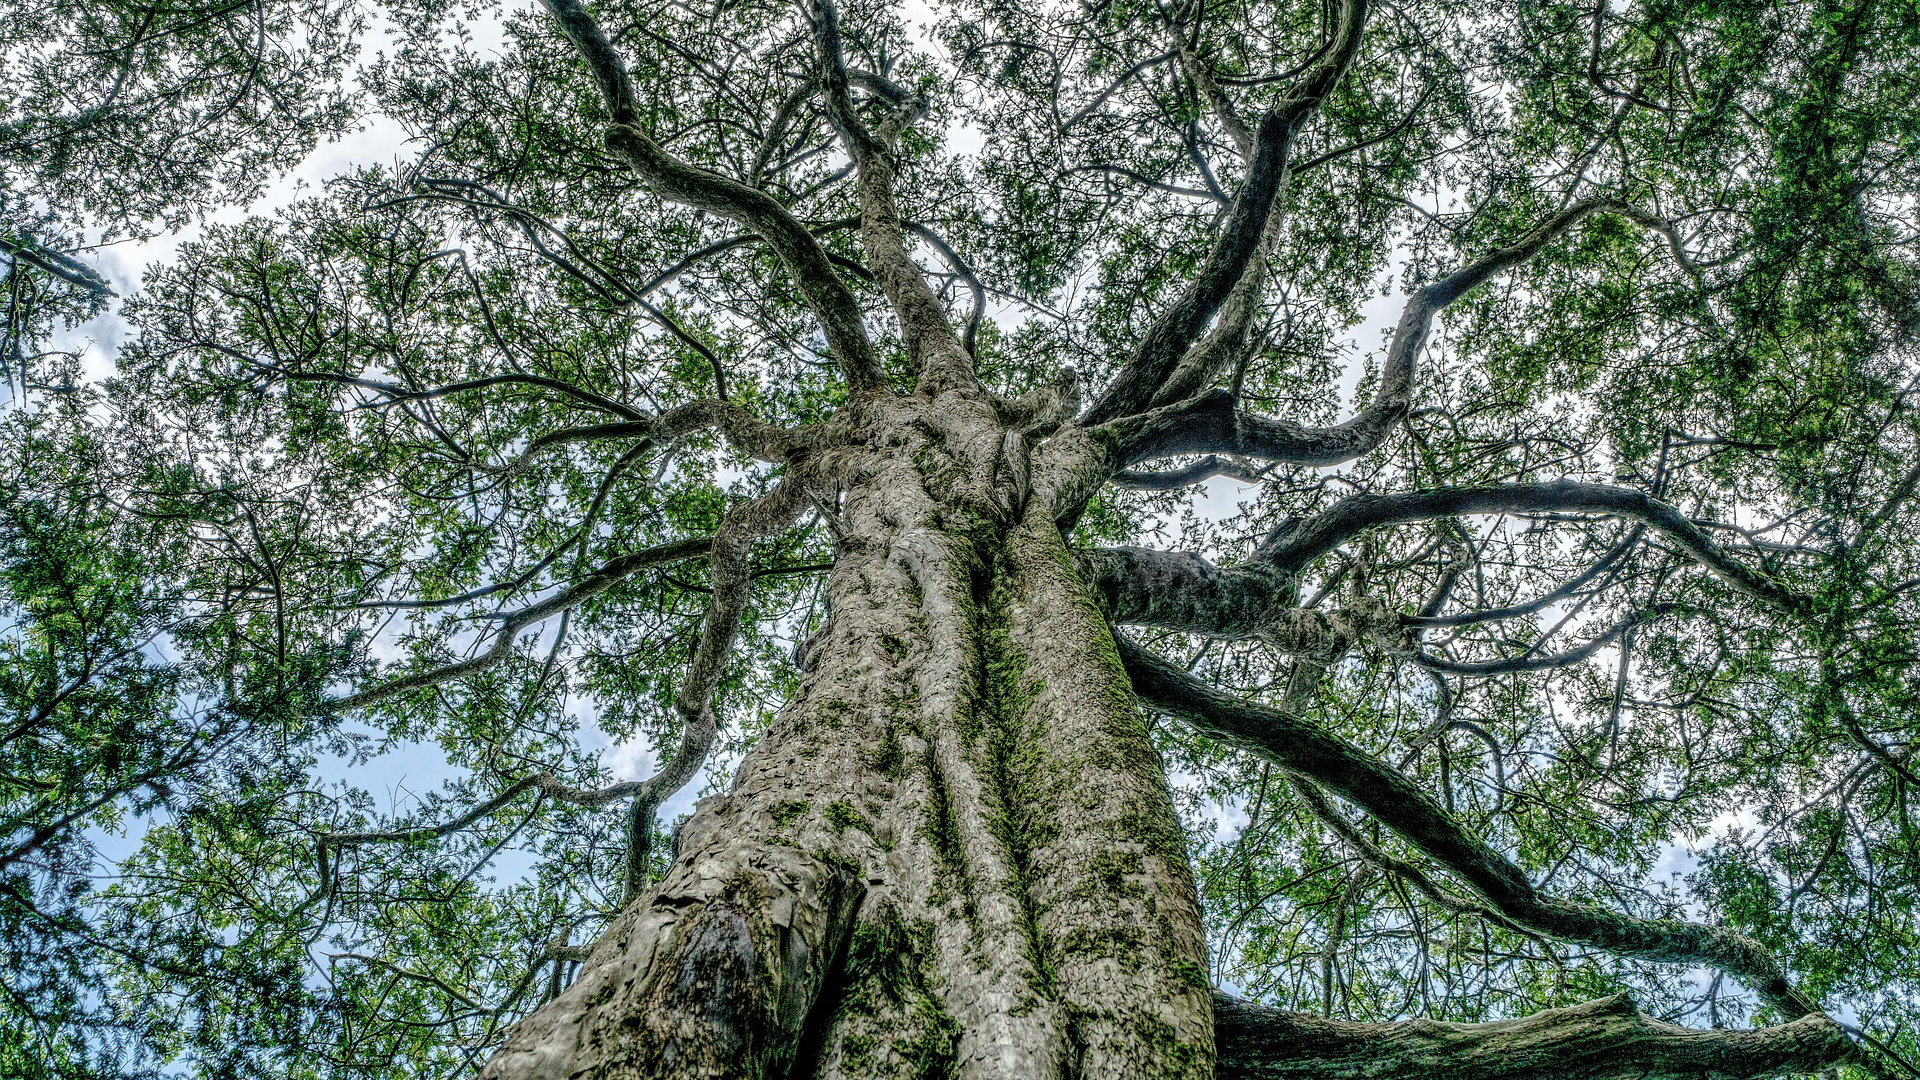 Am Boden eines hohen Baumes wird dessen Baumkrone fotografiert.